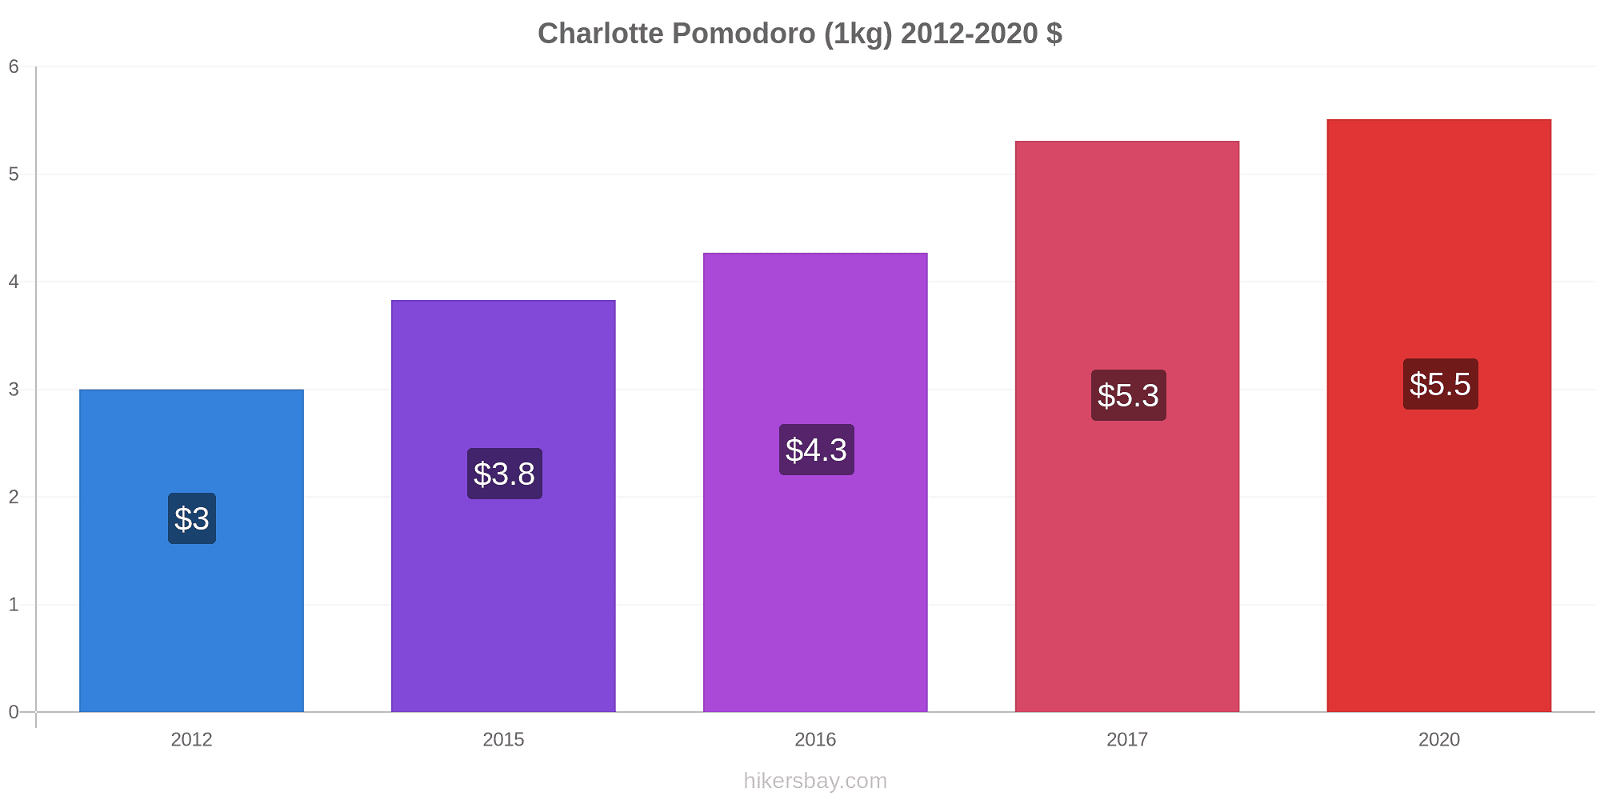 Charlotte variazioni di prezzo Pomodoro (1kg) hikersbay.com